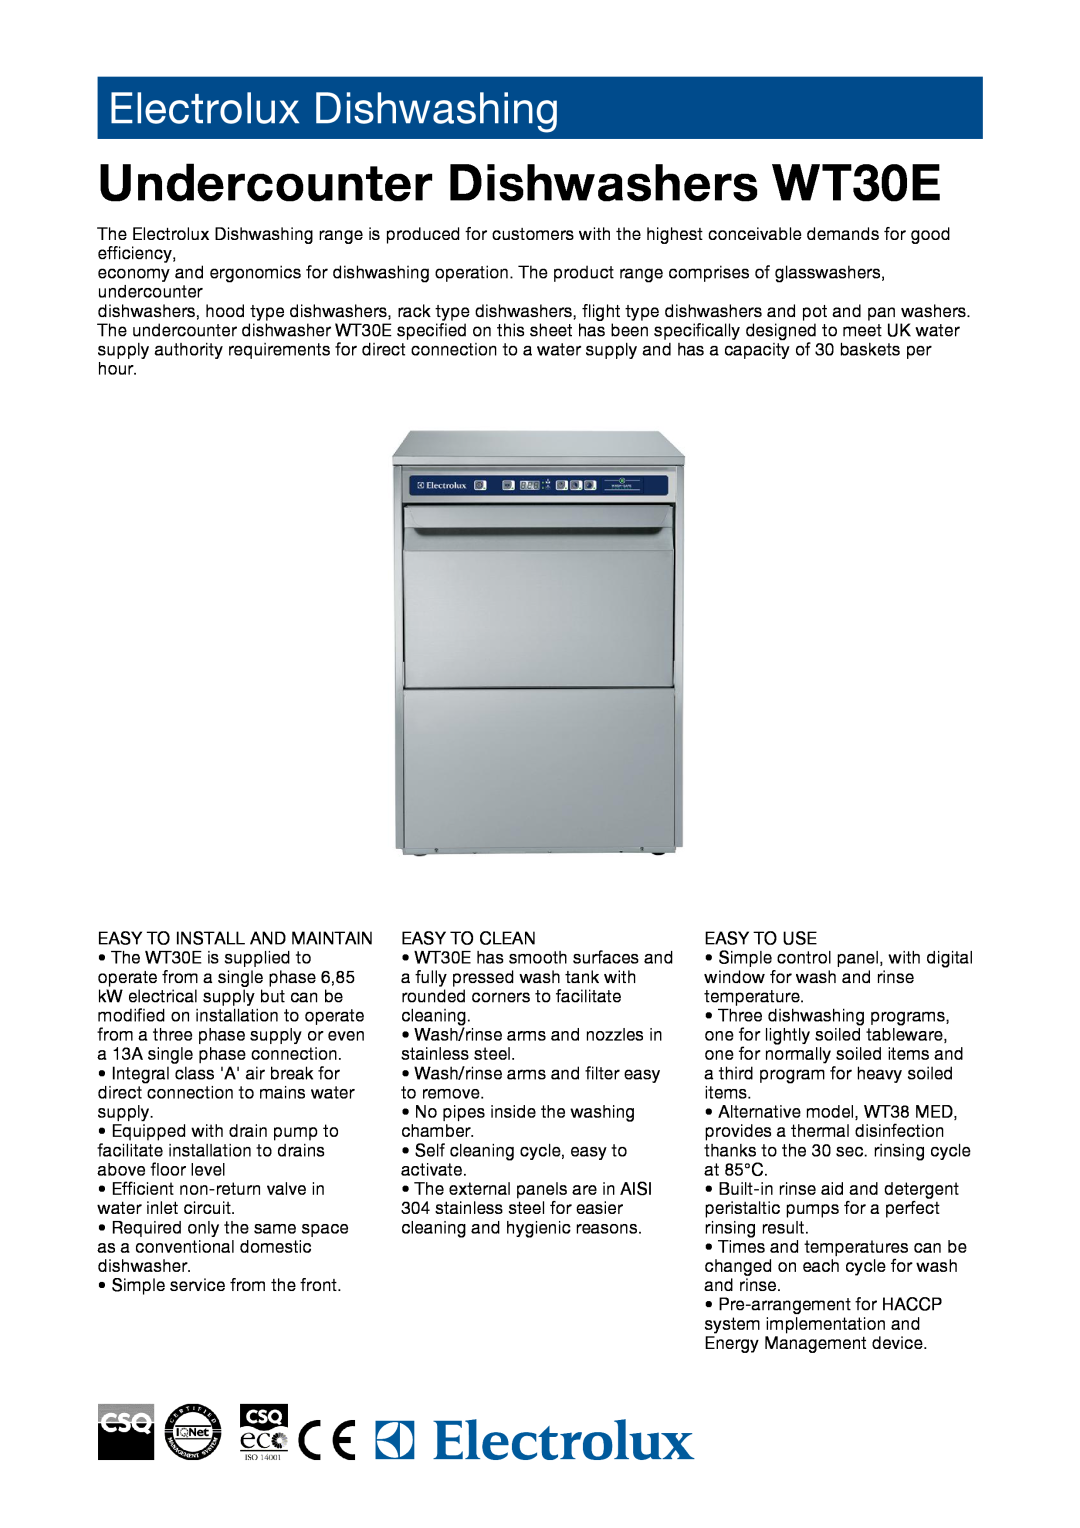 Electrolux manual Undercounter Dishwashers WT30E, Electrolux Dishwashing 